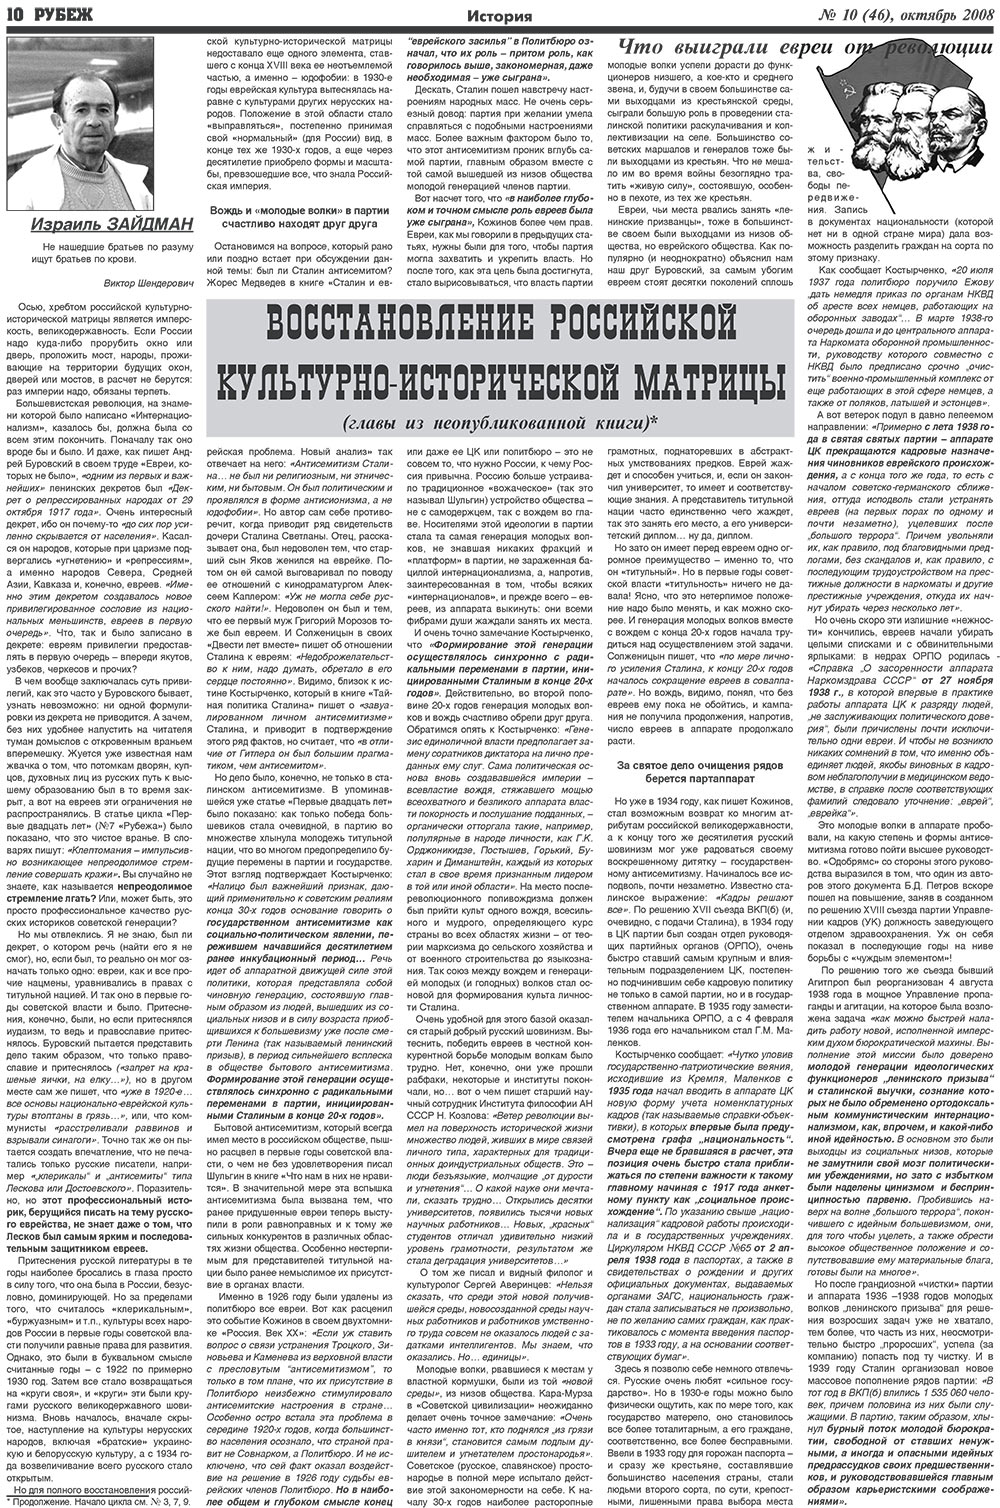 Рубеж (газета). 2008 год, номер 10, стр. 10